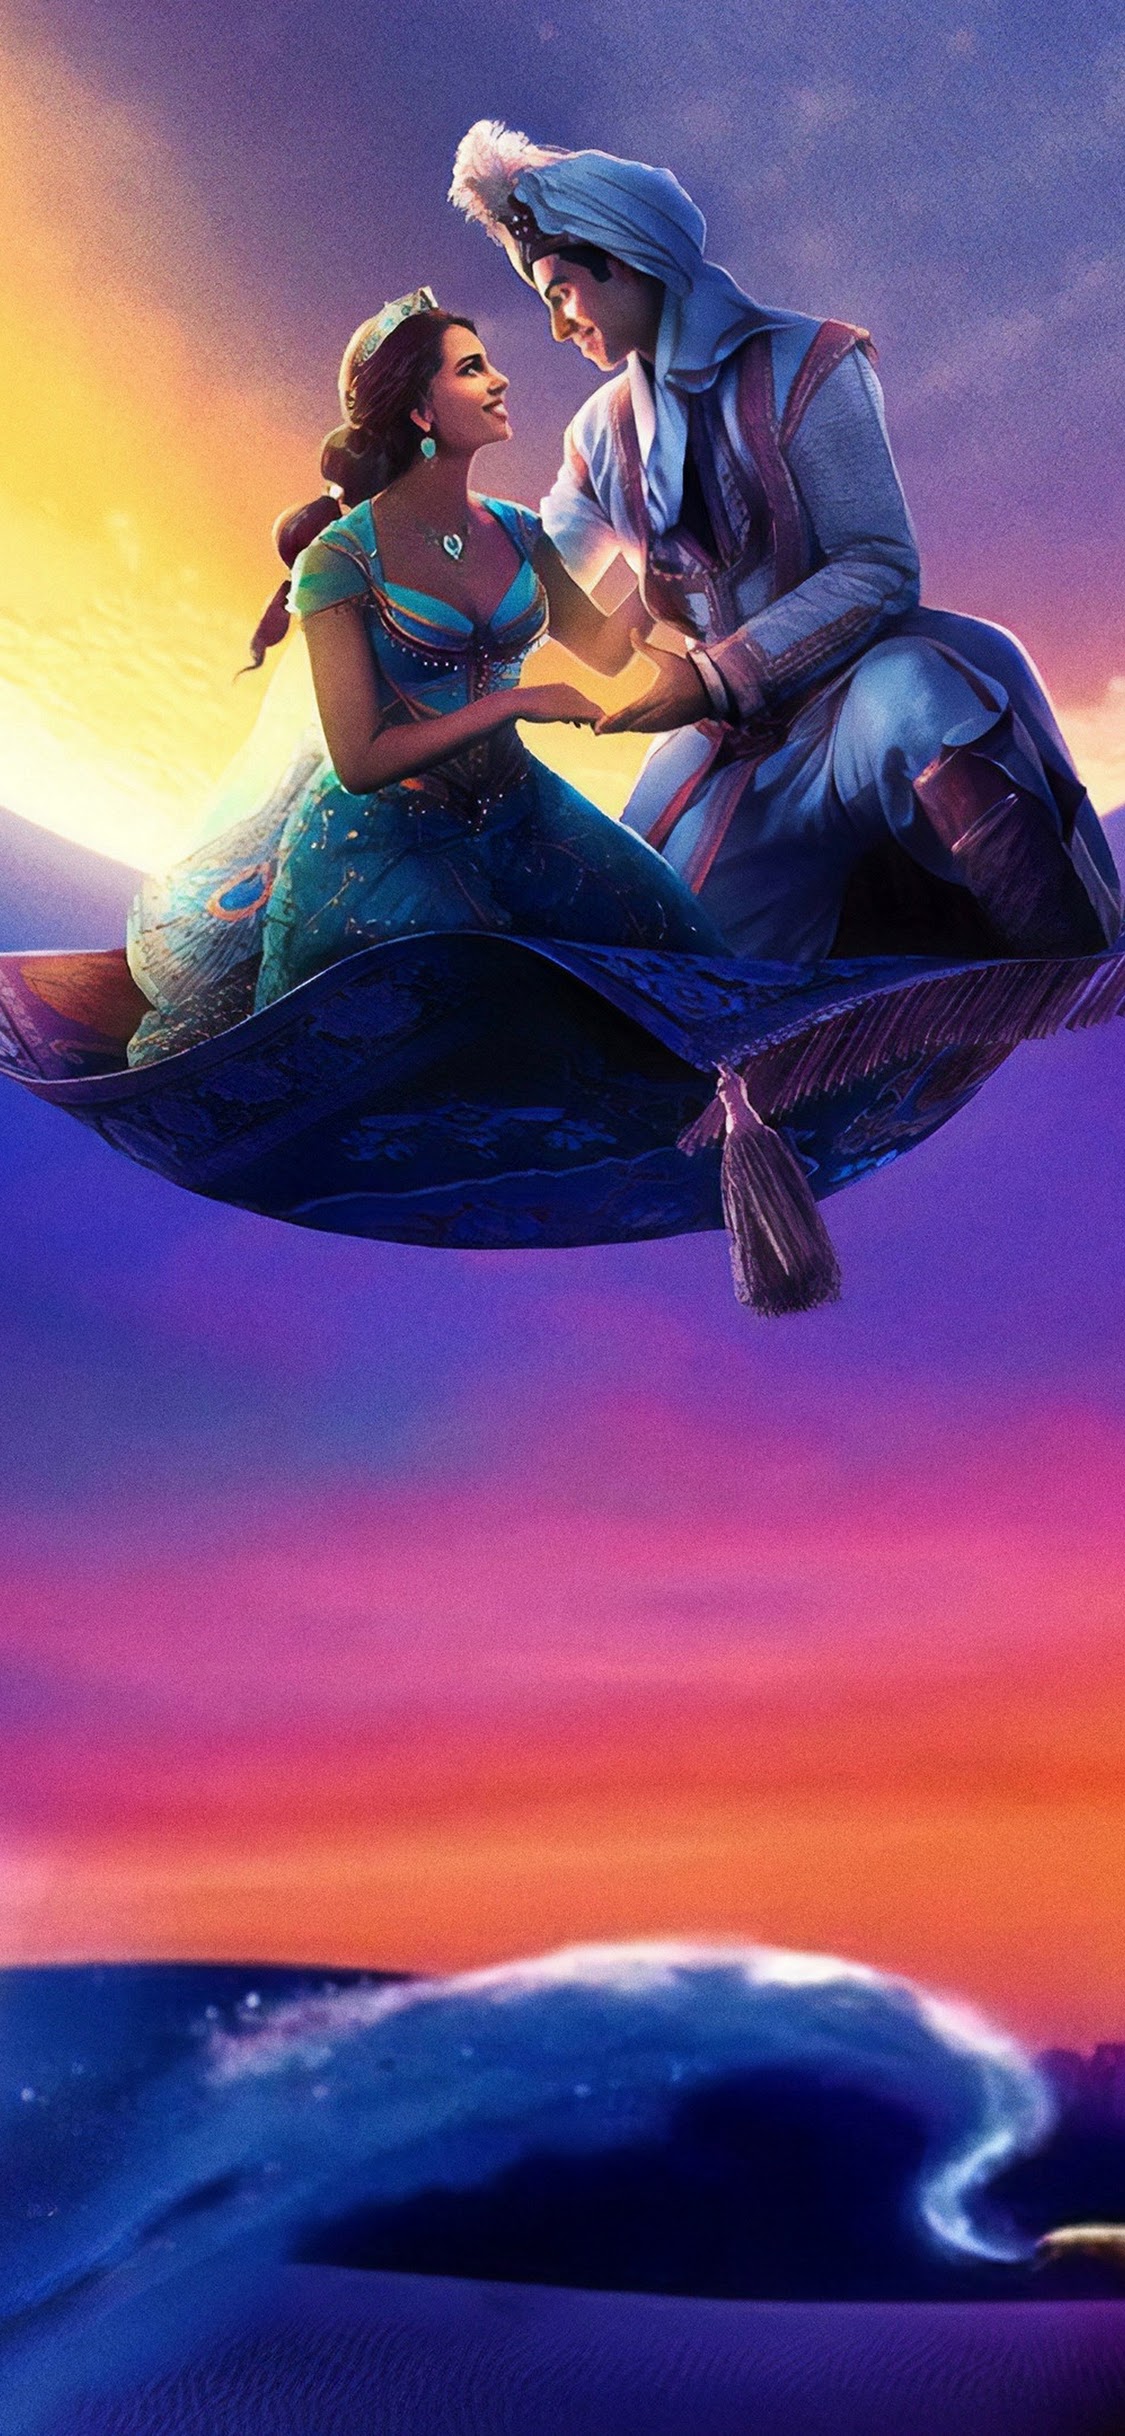 Aladdin, 2019, Genie, Jasmine, Aladdin, 4k, - Aladdin Movie Wallpaper Hd - HD Wallpaper 